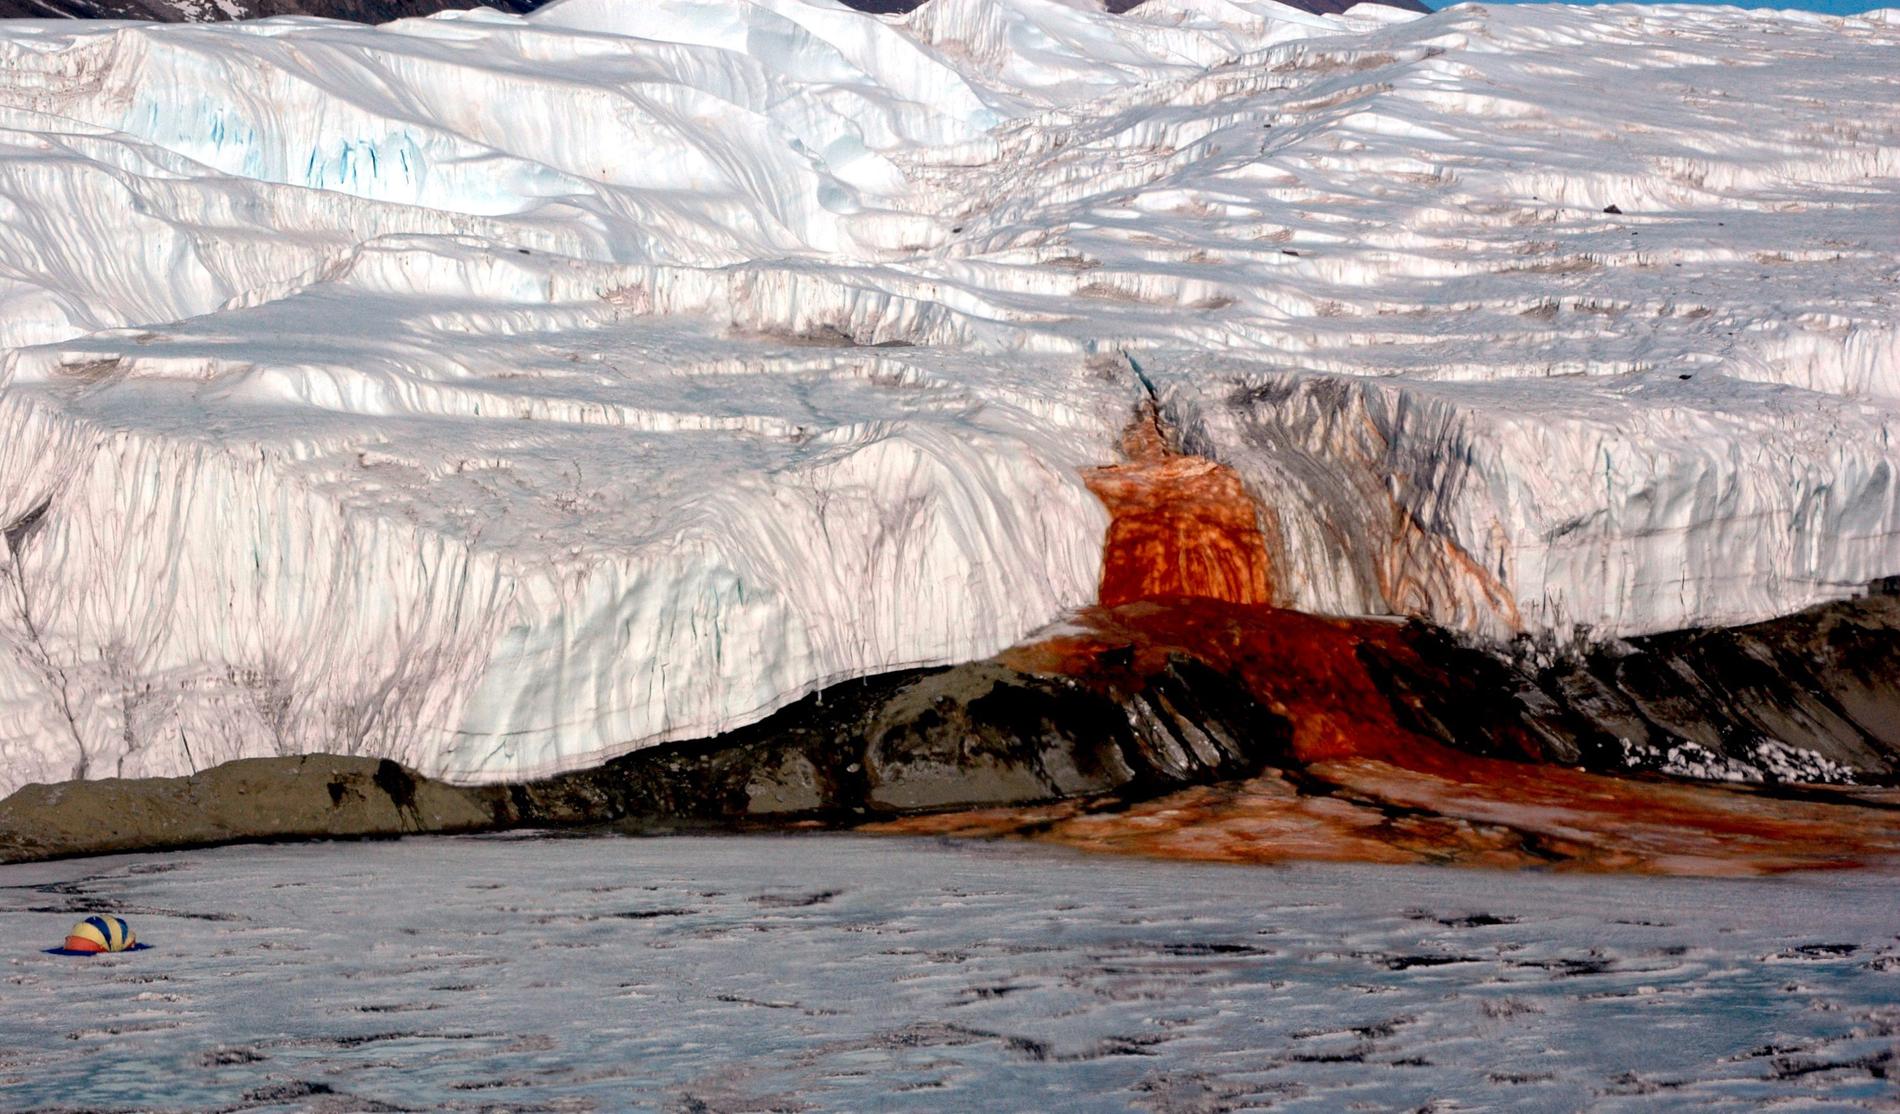 McMurdos torrdalar på Antarktis är ett av världens mest extrema ökenområden. Men under den snustorra ytan finns vatten. Massor av vatten.
Regionen är känd för det skrämmande naturfenomenet "Blood falls", eller blodforsen.
Blodröd sörja forsar fram ur glaciären som om den skulle blöda.